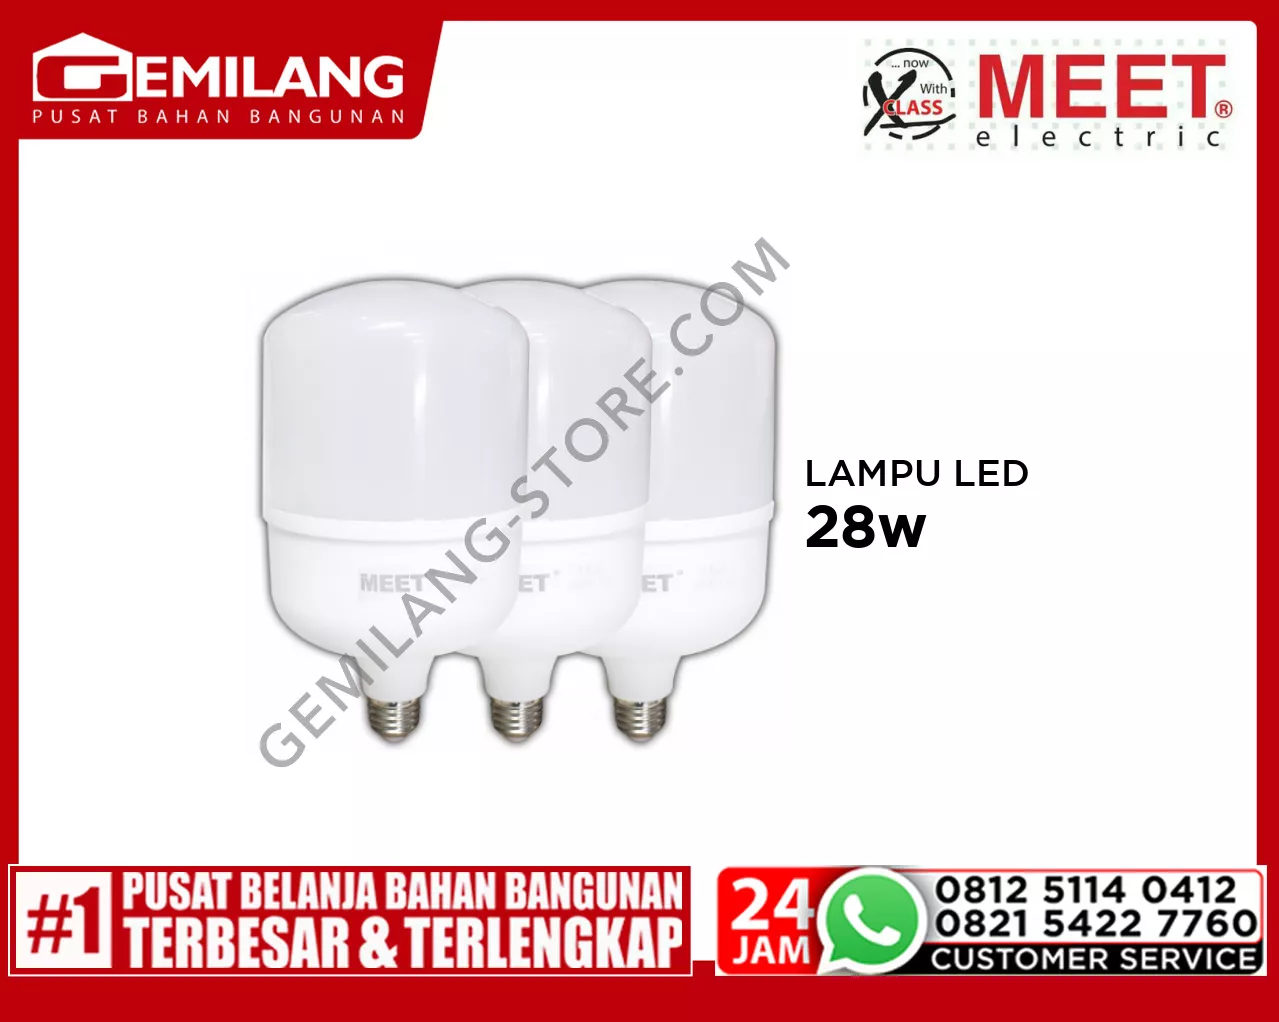 MEET LAMPU LED CAPSULE (2+1) 28w